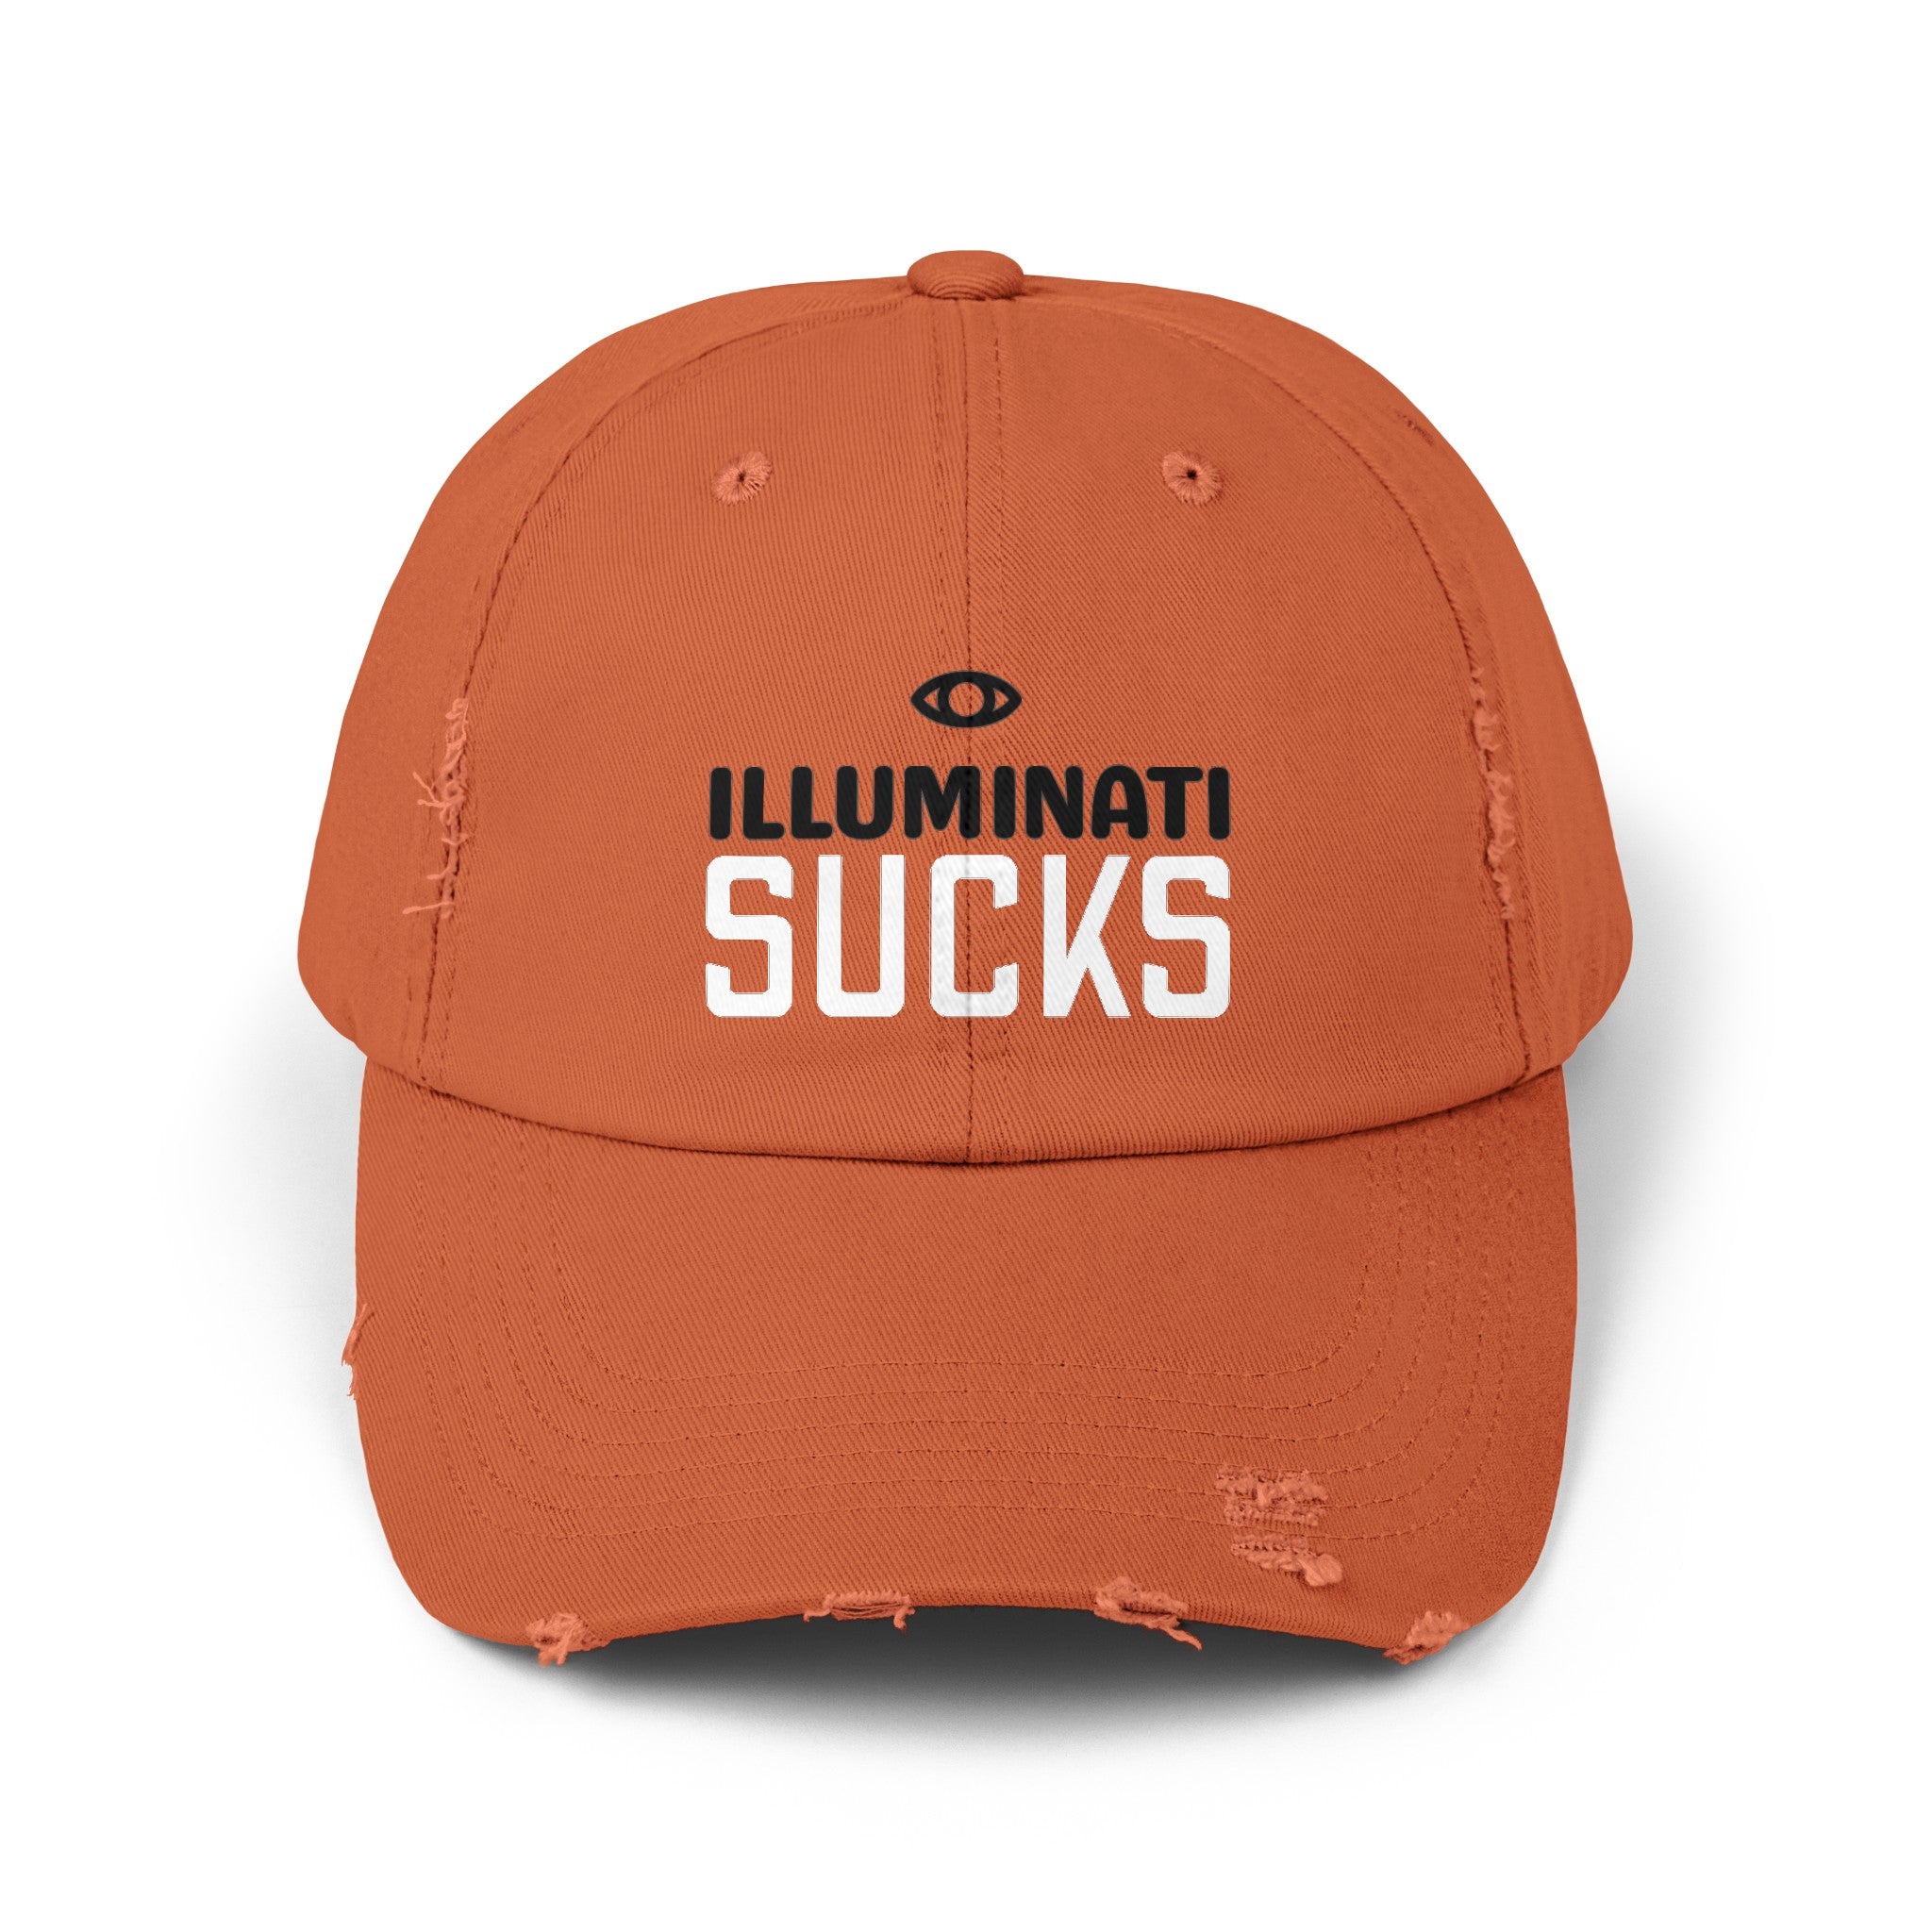 Illuminati Sucks (2 versions) – Unisex Distressed Cap